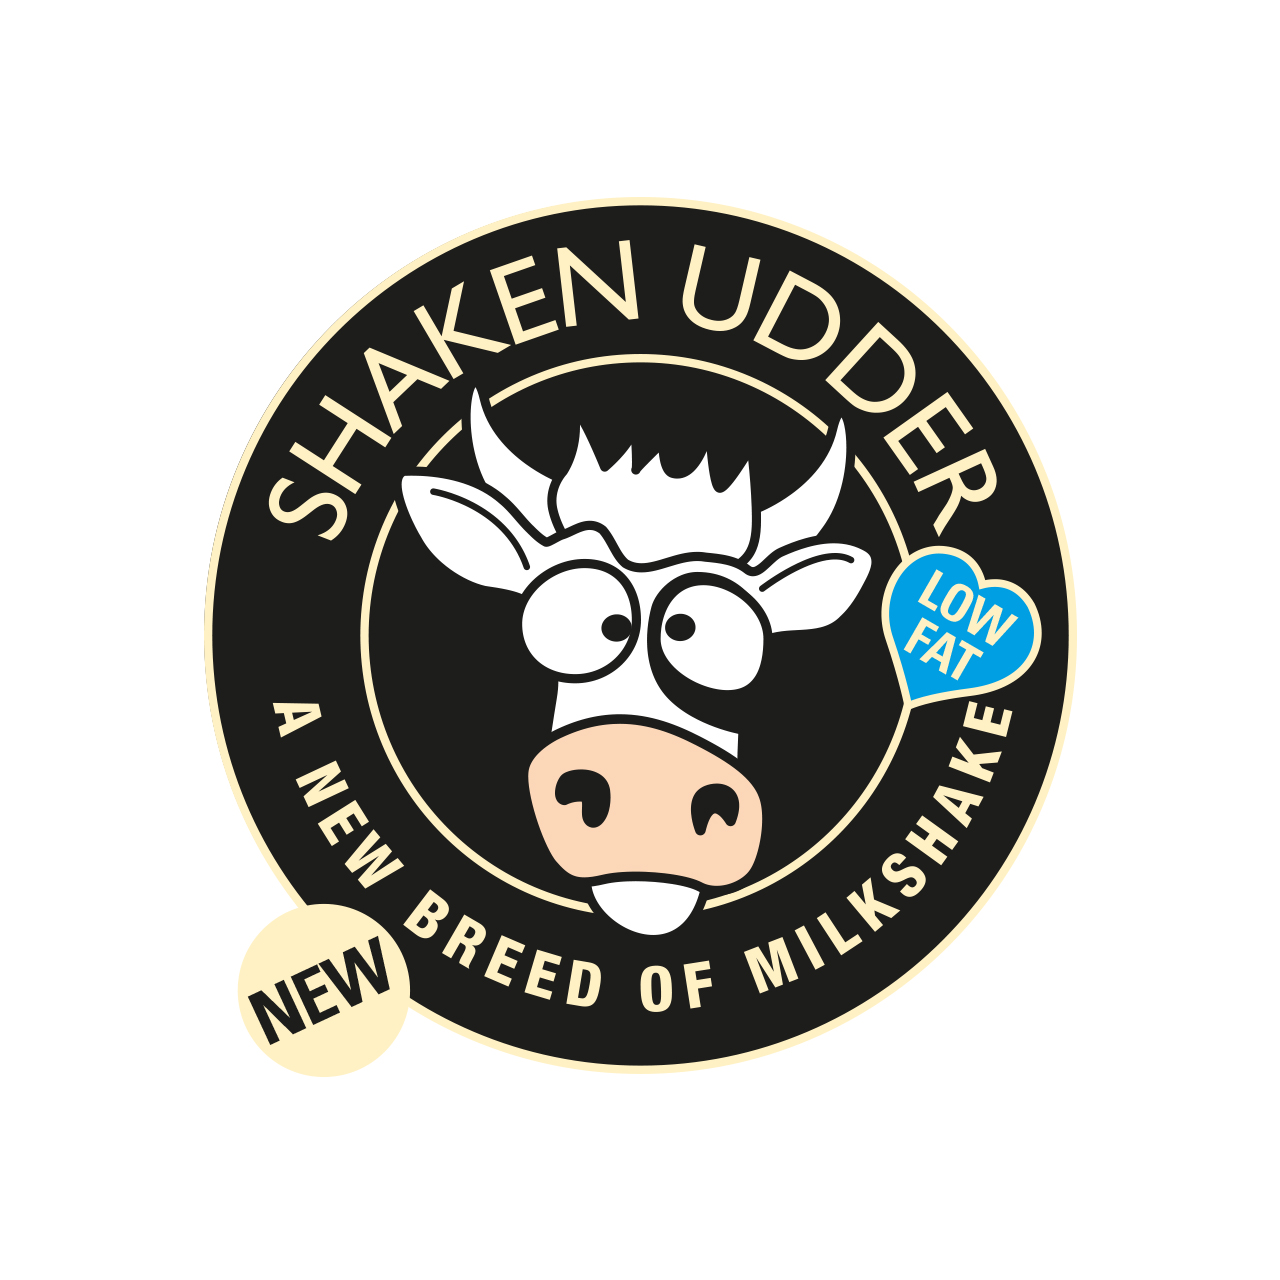 Shaken Udder Low Fat logo